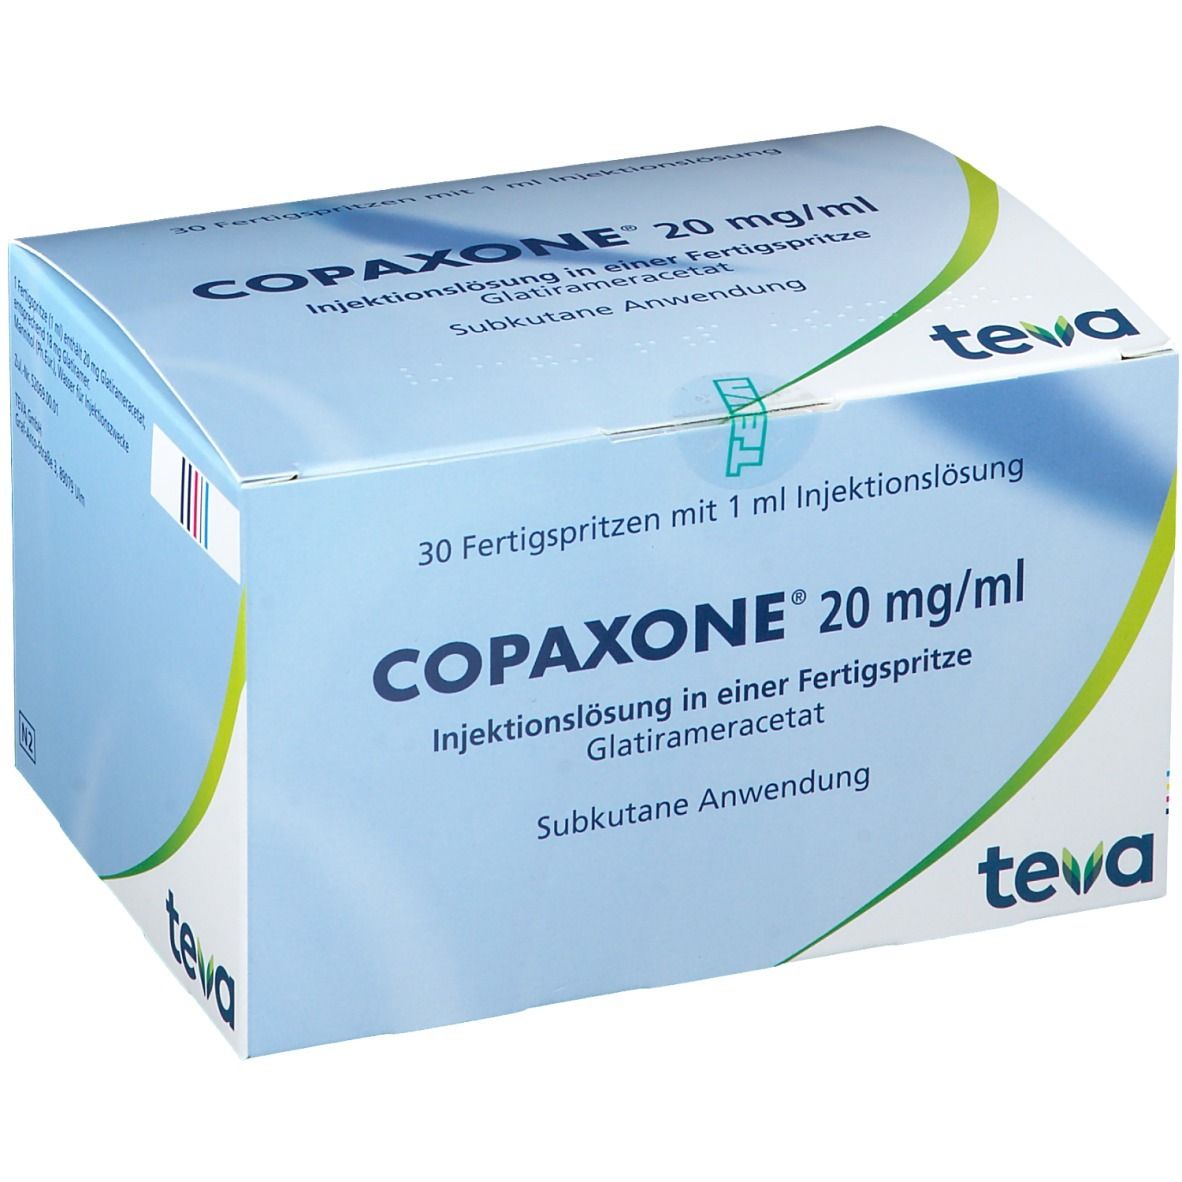 COPAXONE® 20 mg/ml